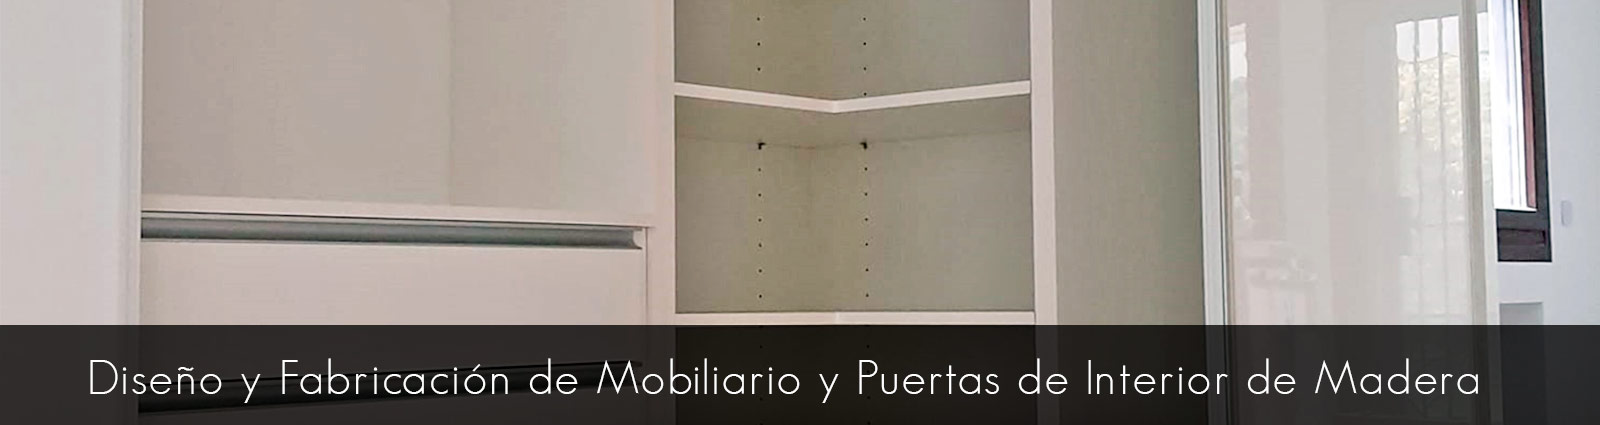 Diseño y fabricacion de muebles y puertas de interior en Madrid y Toledo.